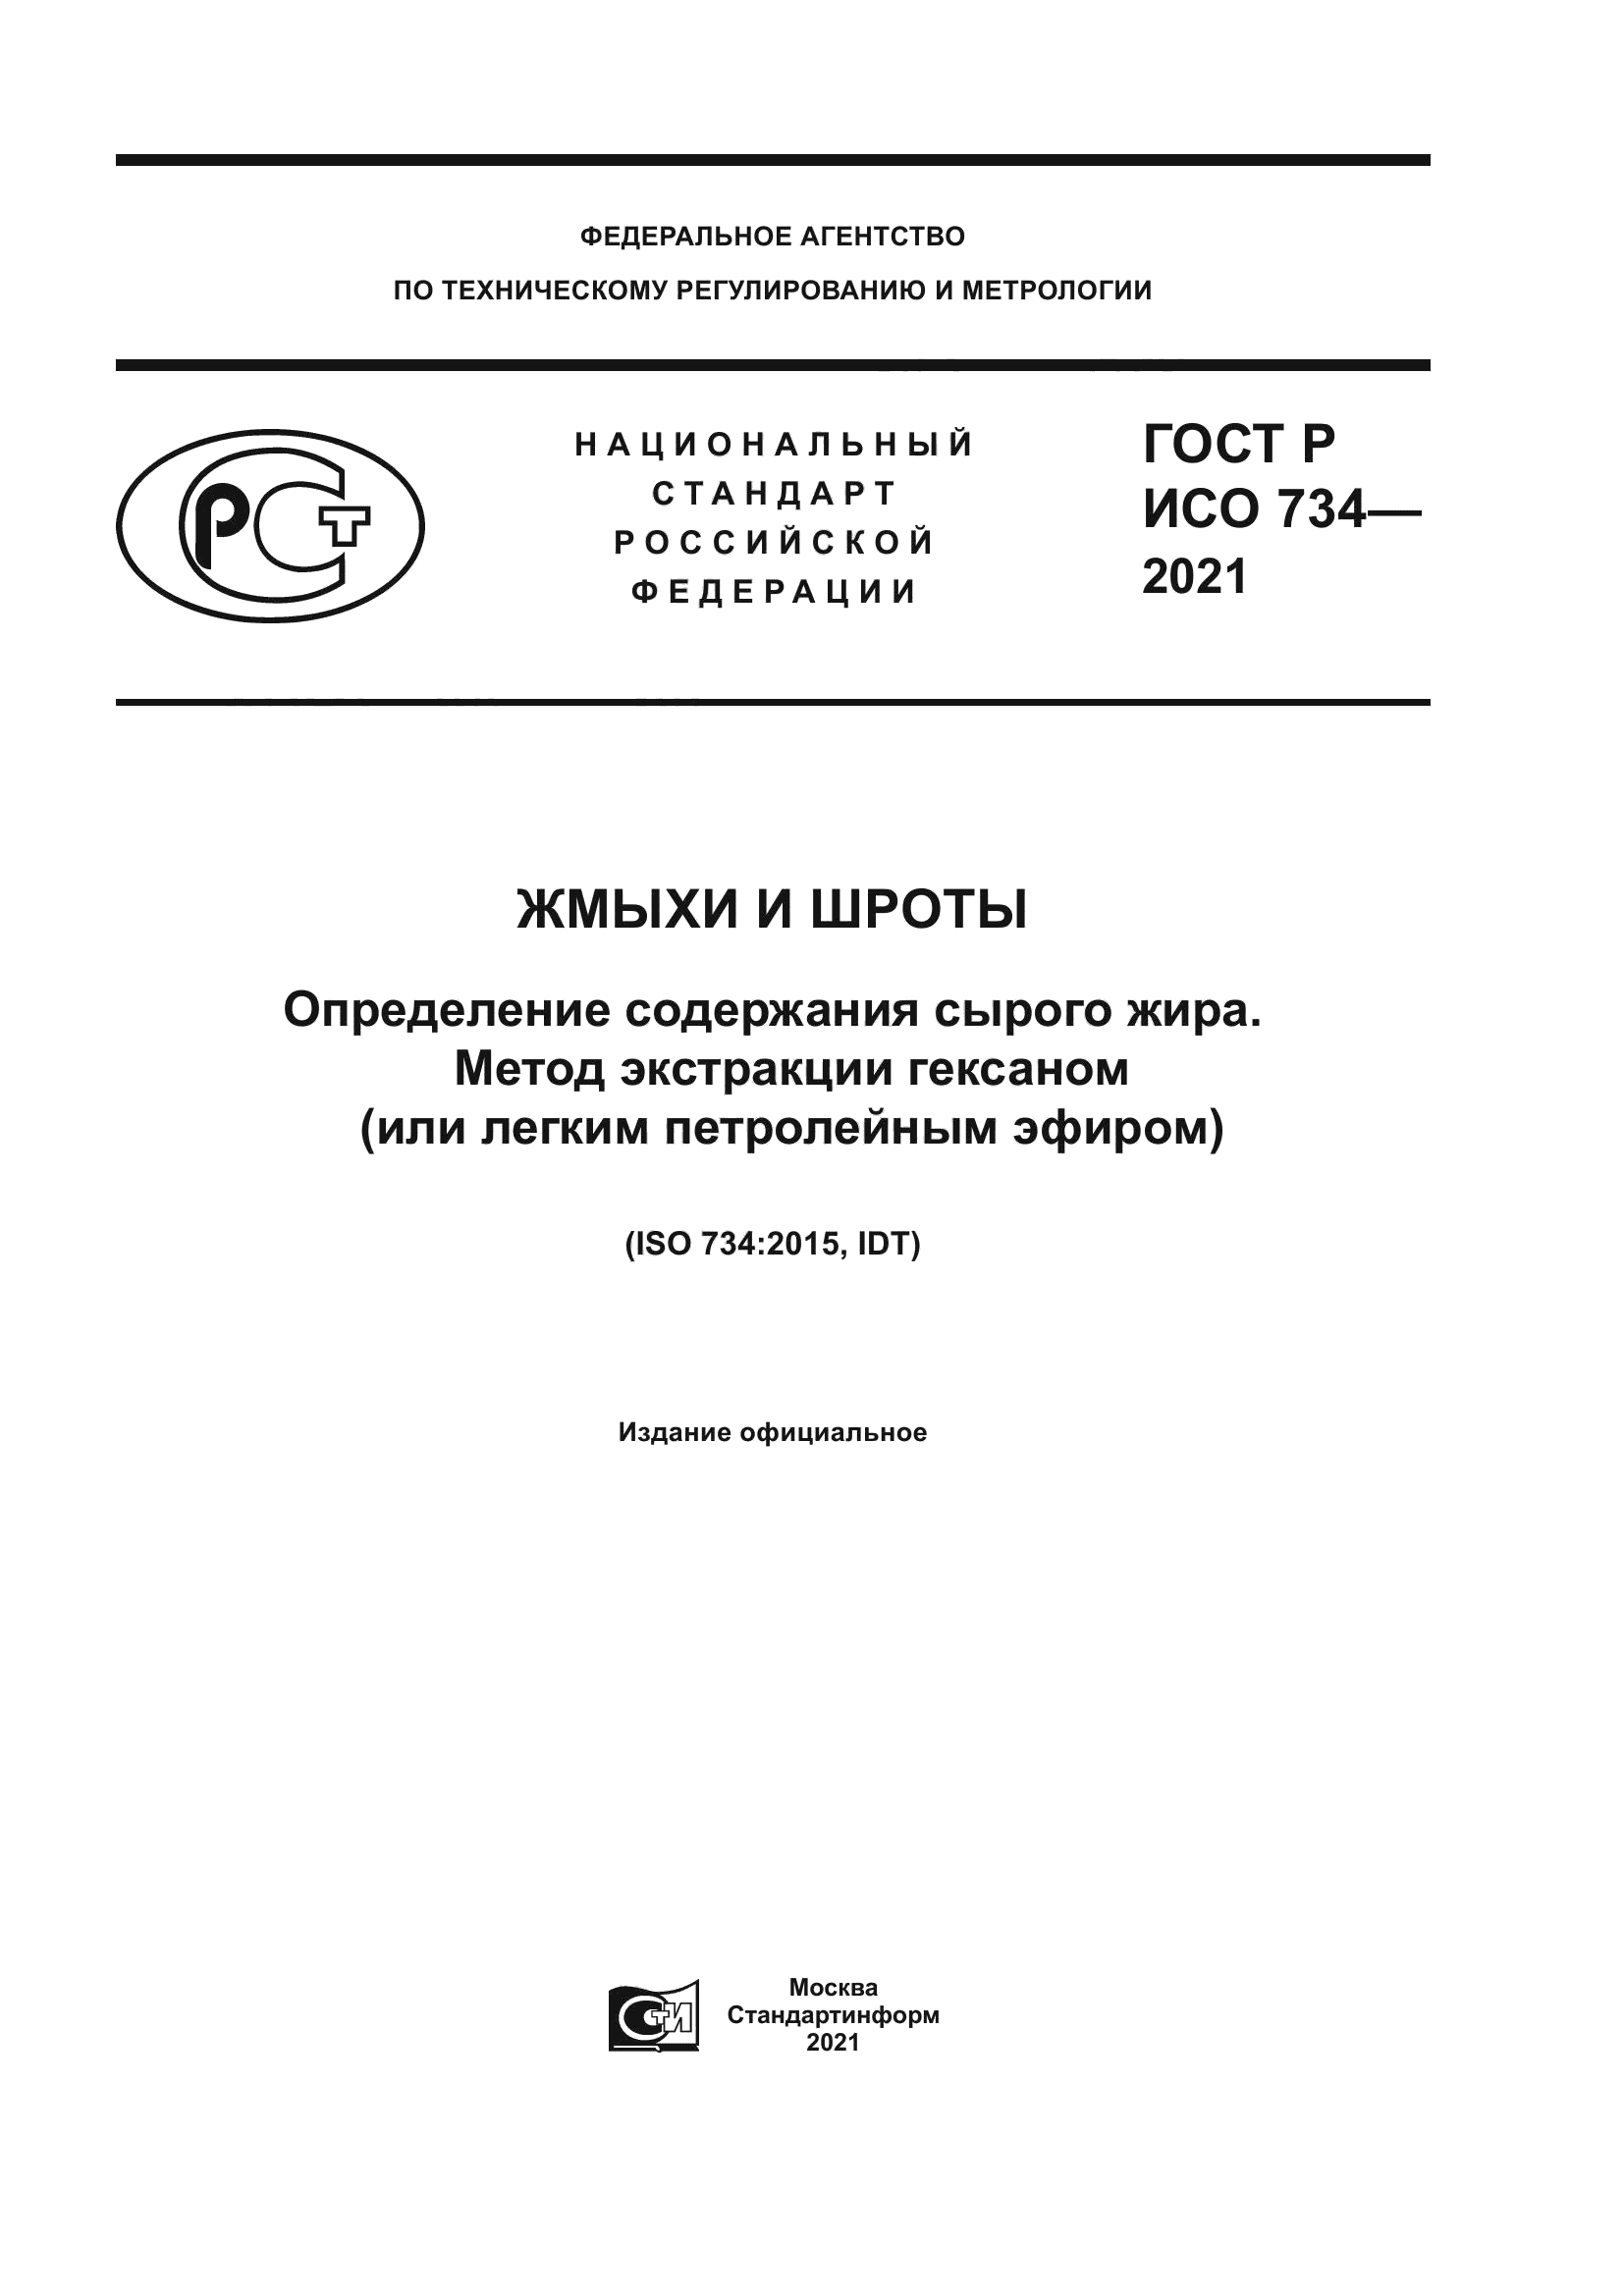 ГОСТ Р ИСО 734-2021